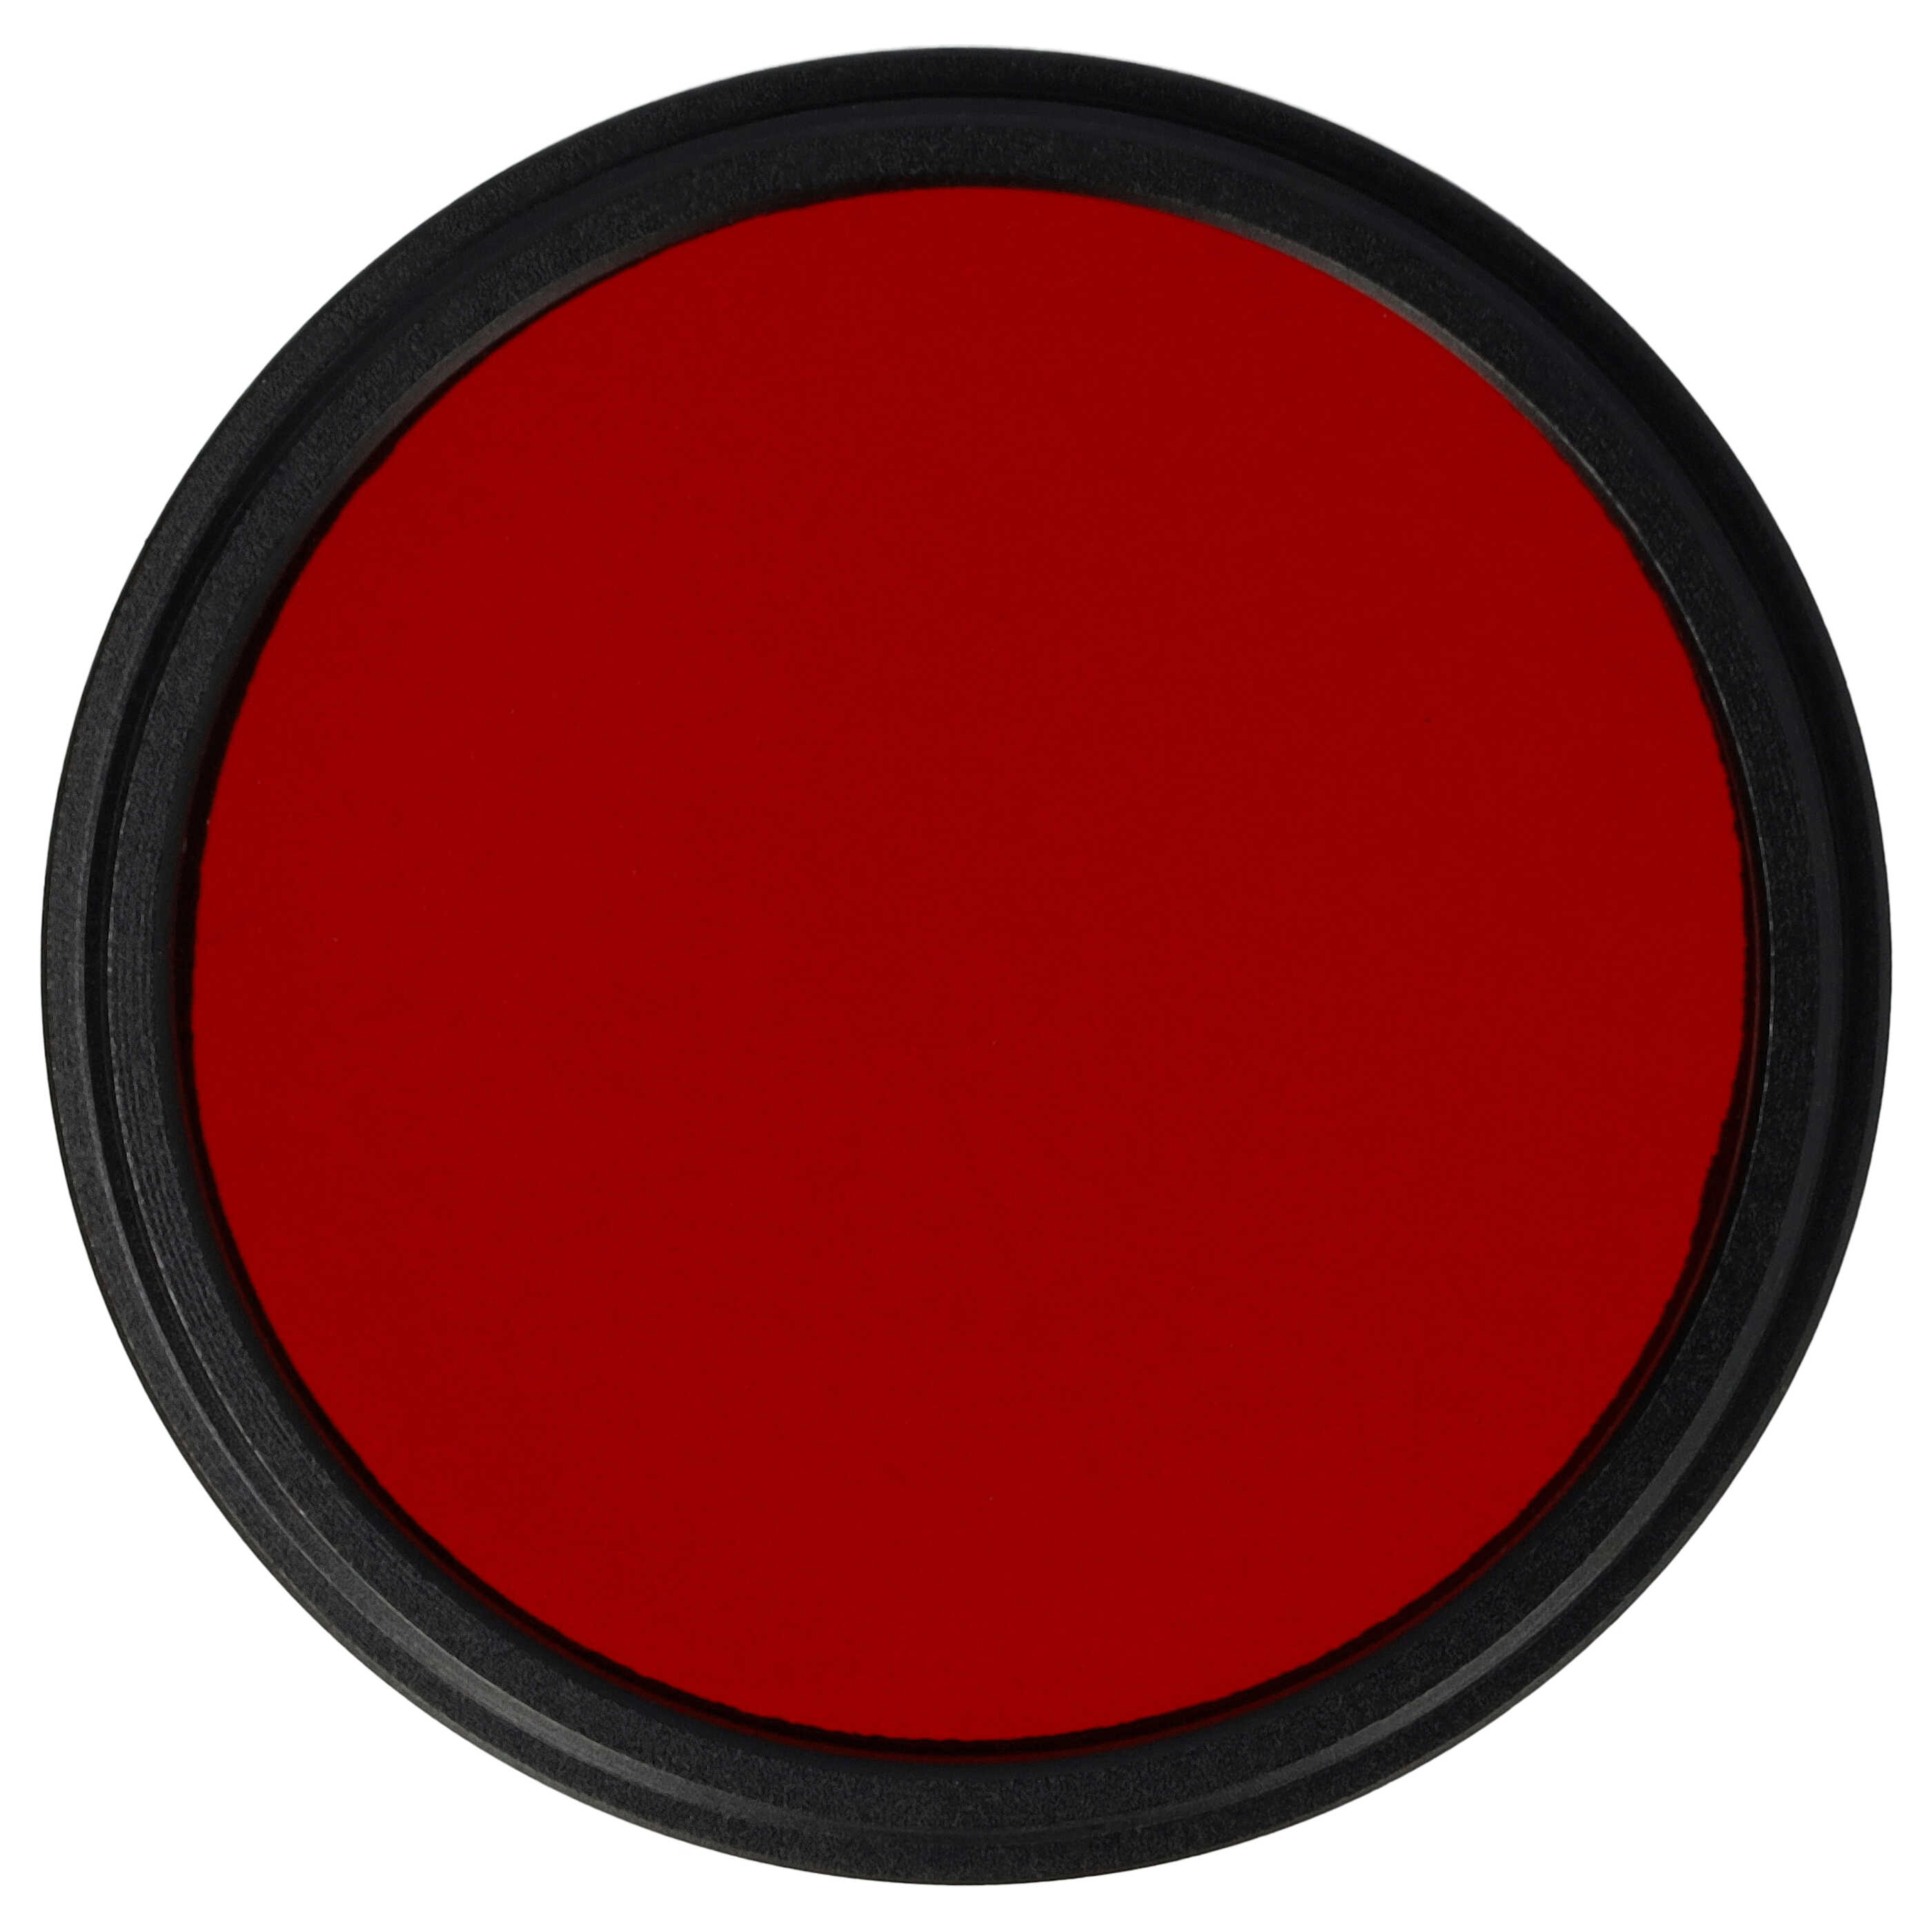 Farbfilter rot passend für Kamera Objektive mit 46 mm Filtergewinde - Rotfilter